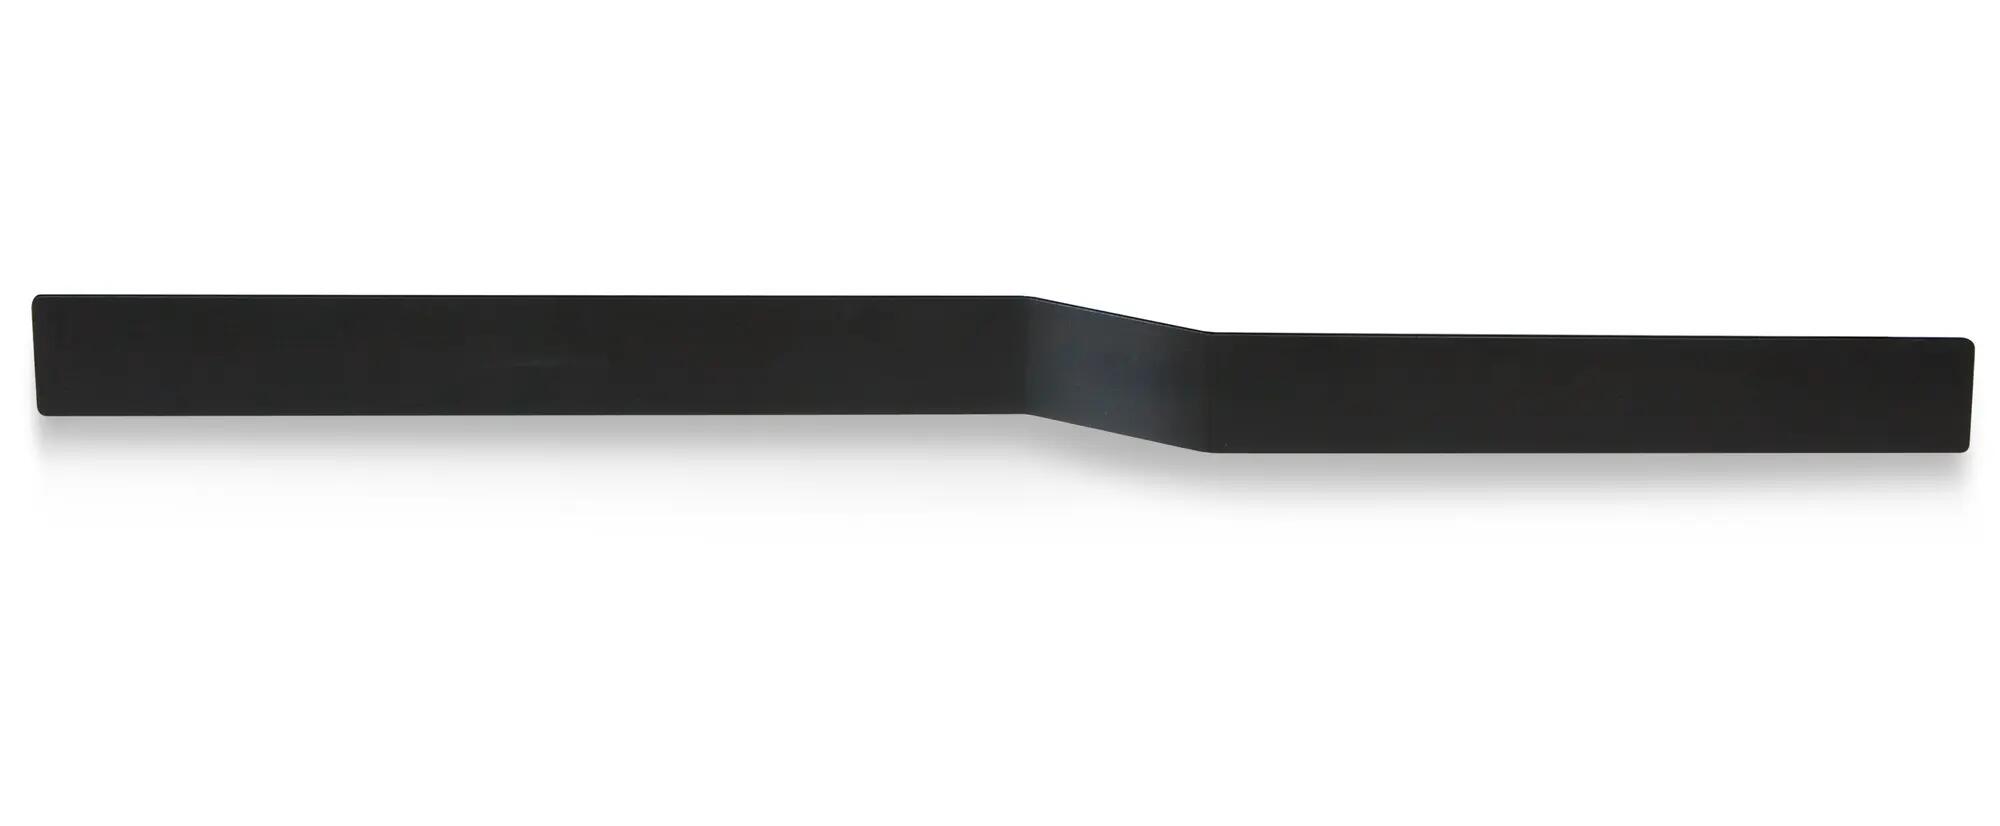 Toallero tokio-osaka negro x7.5 cm